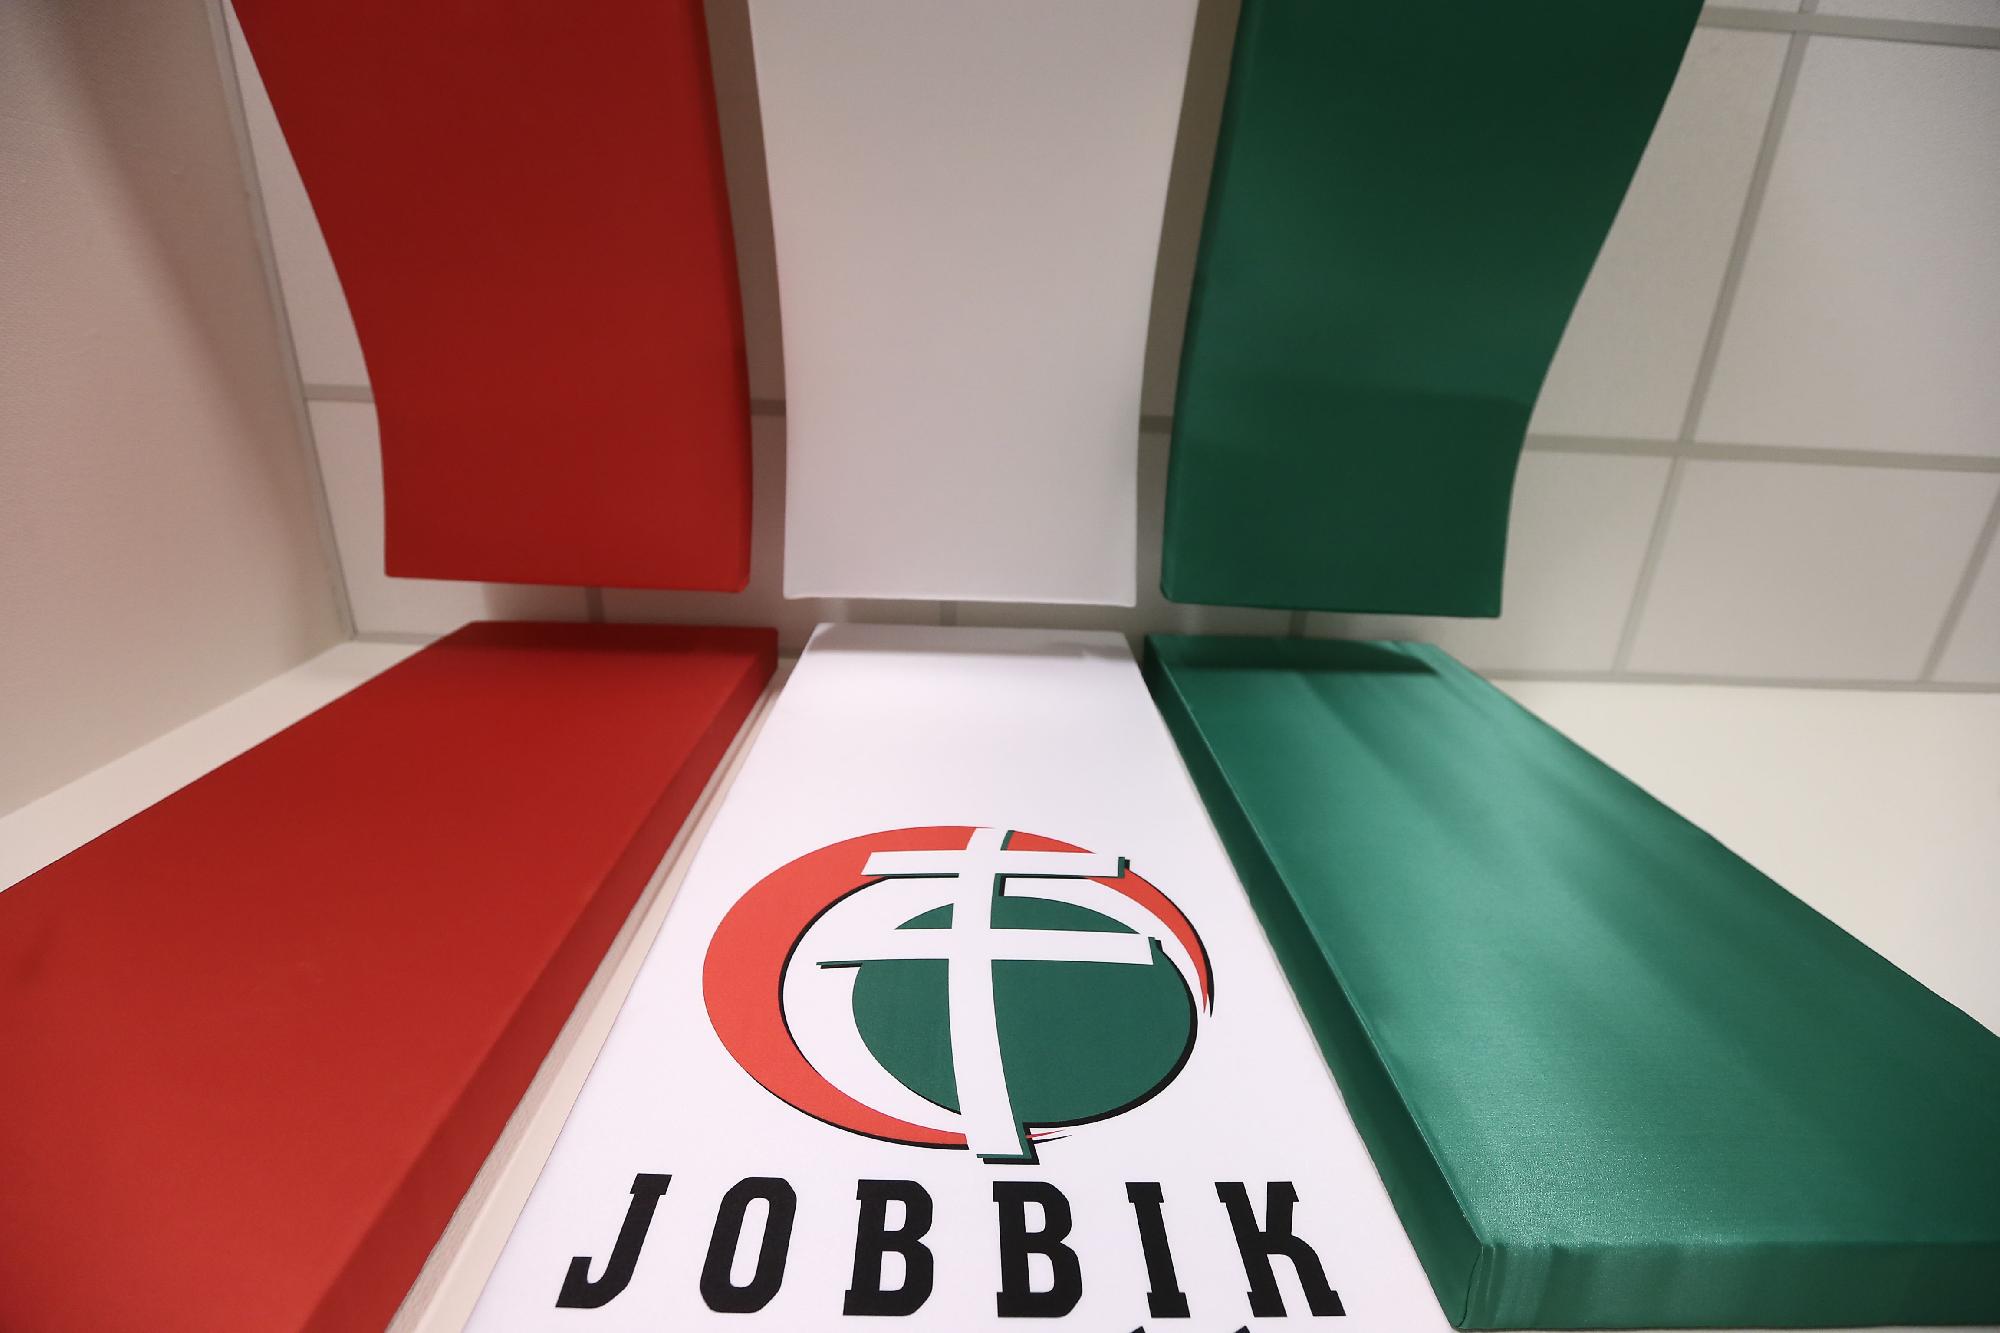 Hivatalos dokumentumok cáfolják a Jobbik állítását